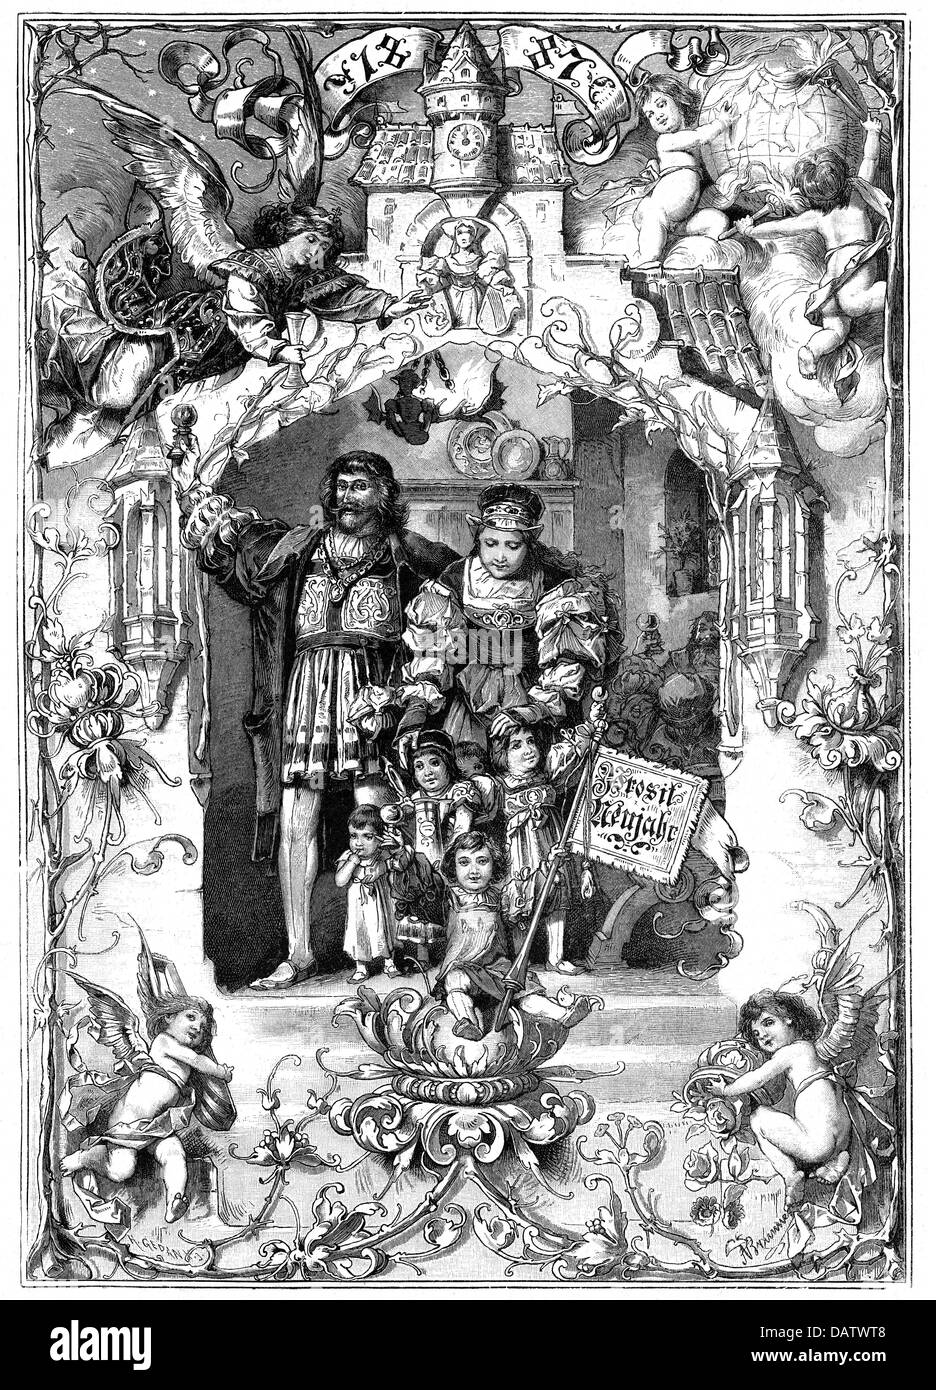 Festivités, Saint-Sylvestre, 'bonne année' (Prosut Neujahr), après A.Brunner, gravure en bois, par H.Gedan, 1887, droits additionnels-Clearences-non disponible Banque D'Images